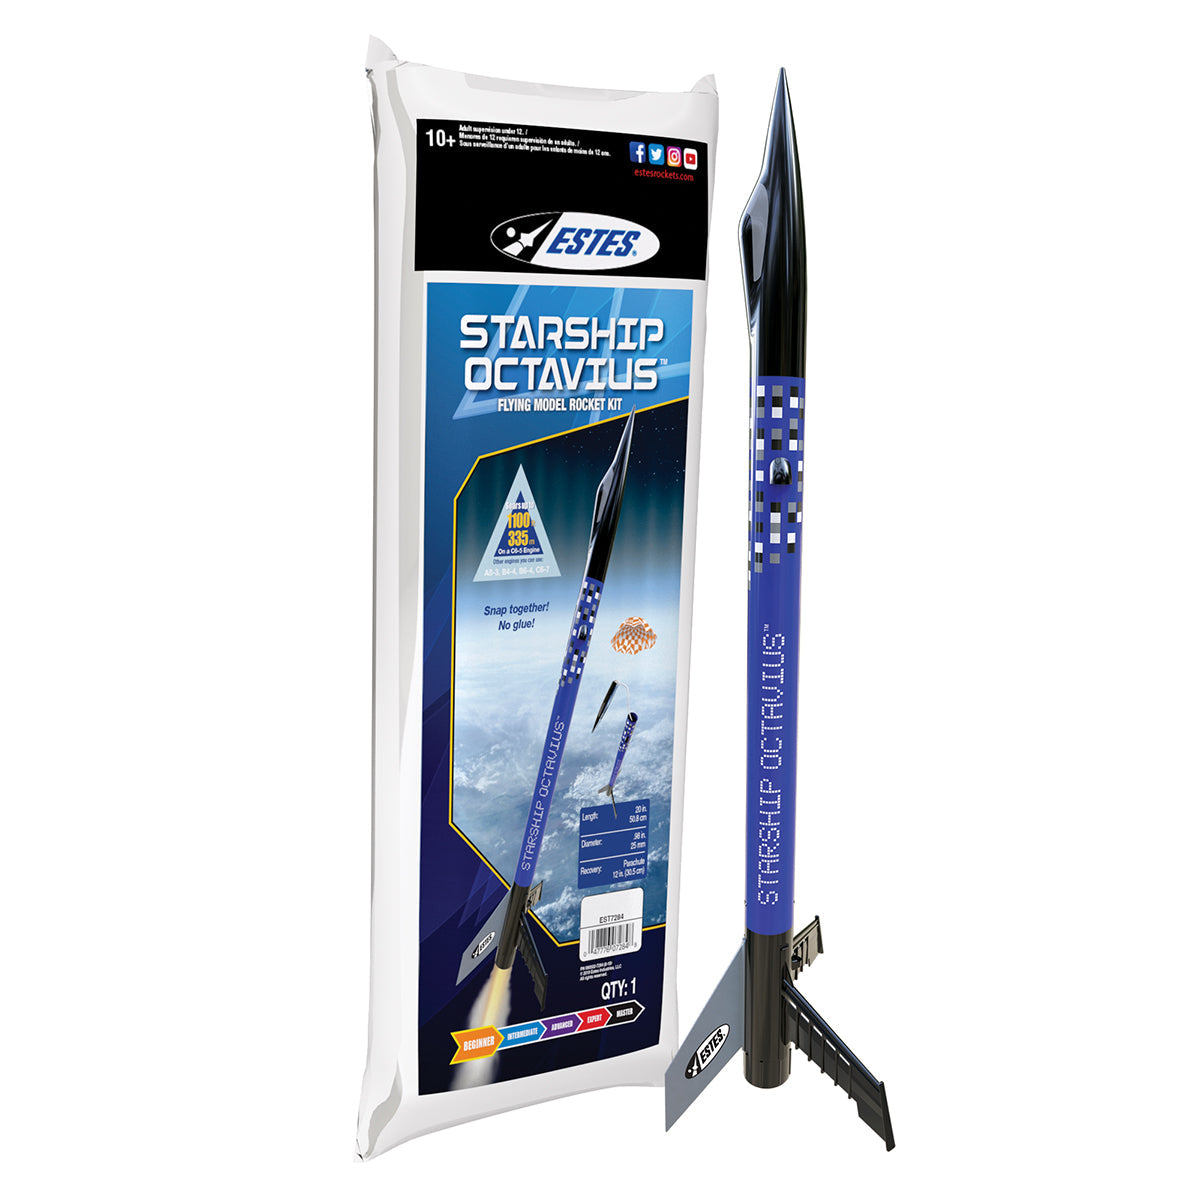 EST7284	Starship Octavius rocket kit Beginner